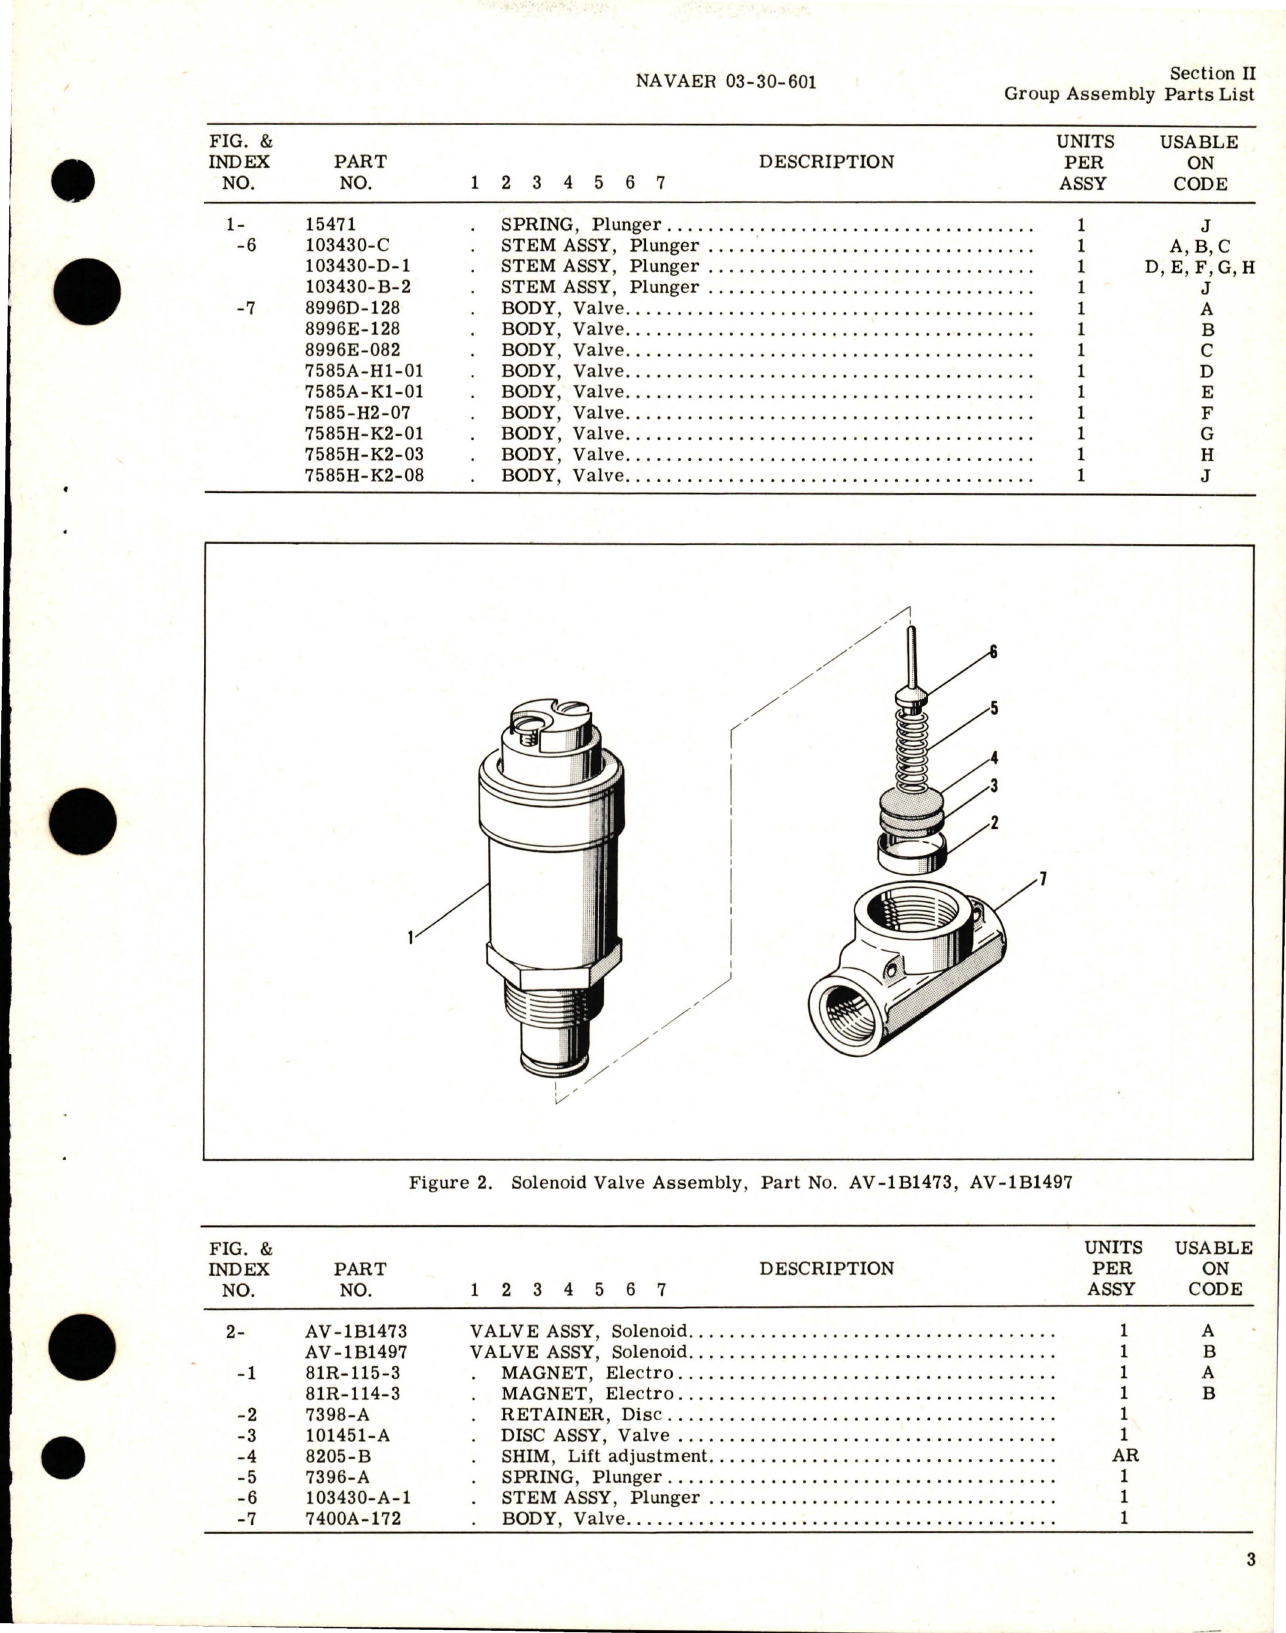 Sample page 7 from AirCorps Library document: Illustrated Parts Breakdown for Solenoid Valves - AV-1B Series - Part AV-1B1212 and Similar Valves